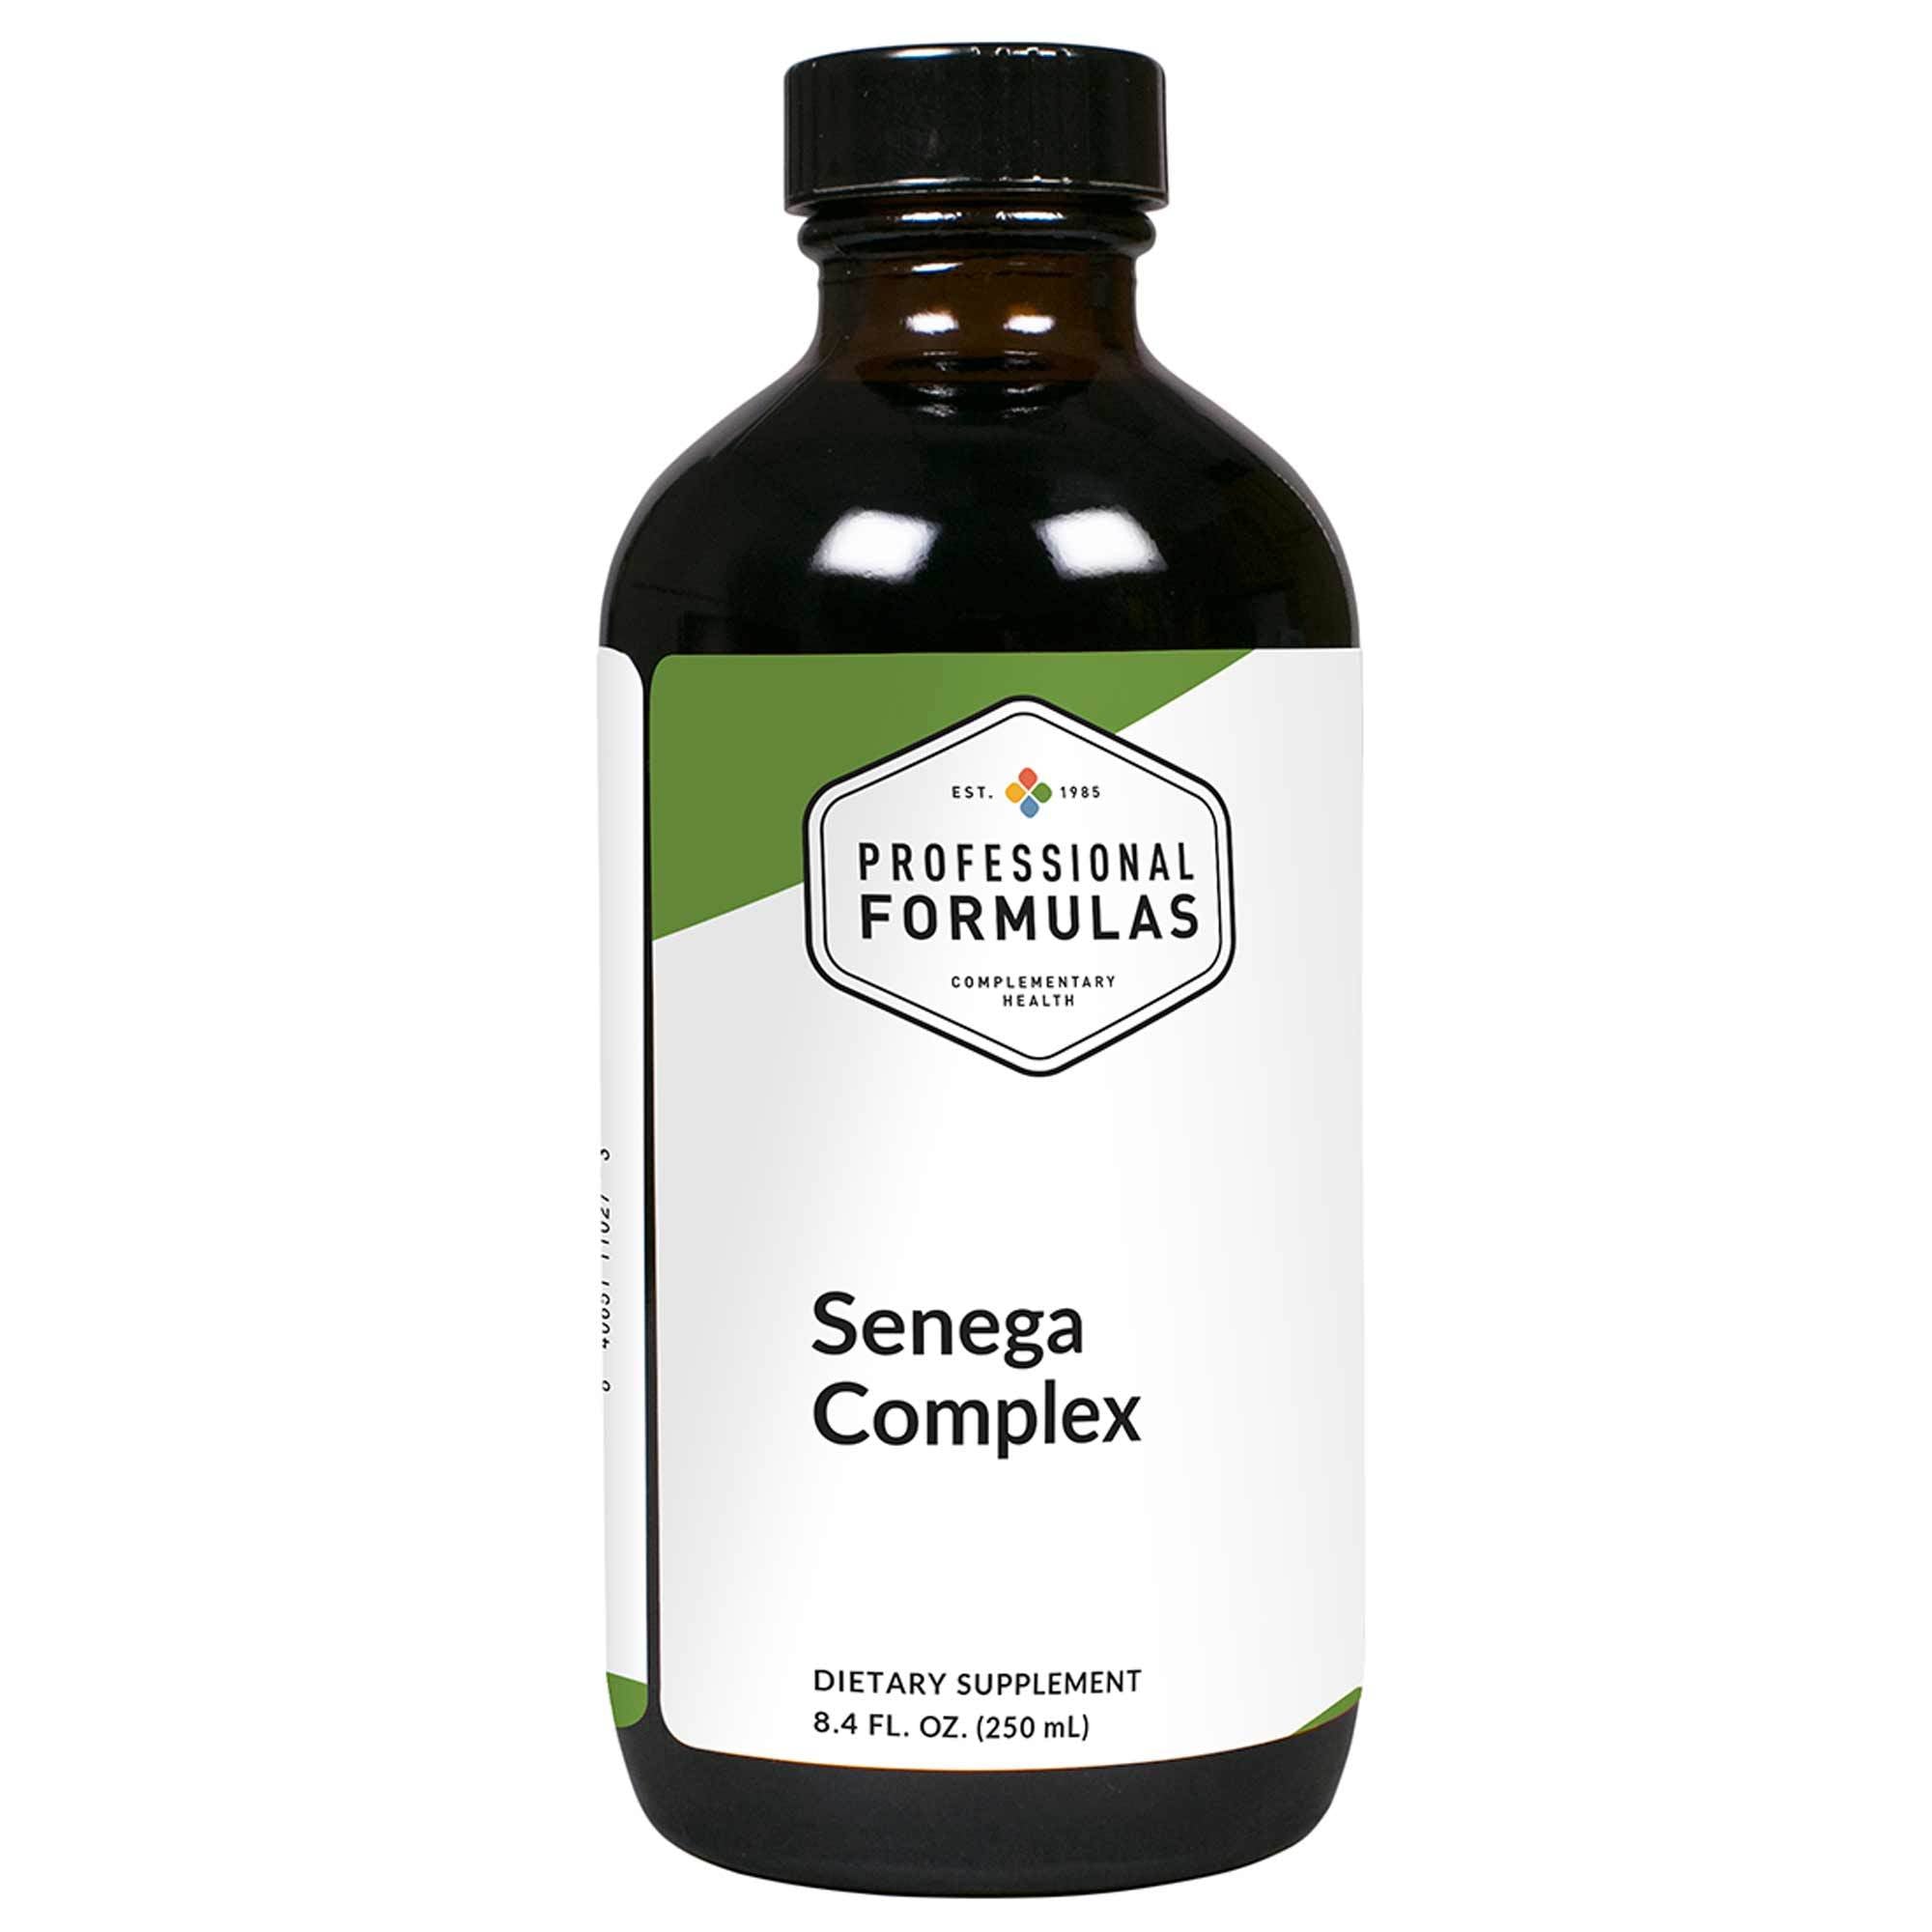 Professional Formulas - Senega Complex - 8.4 FL. OZ. (250 mL)